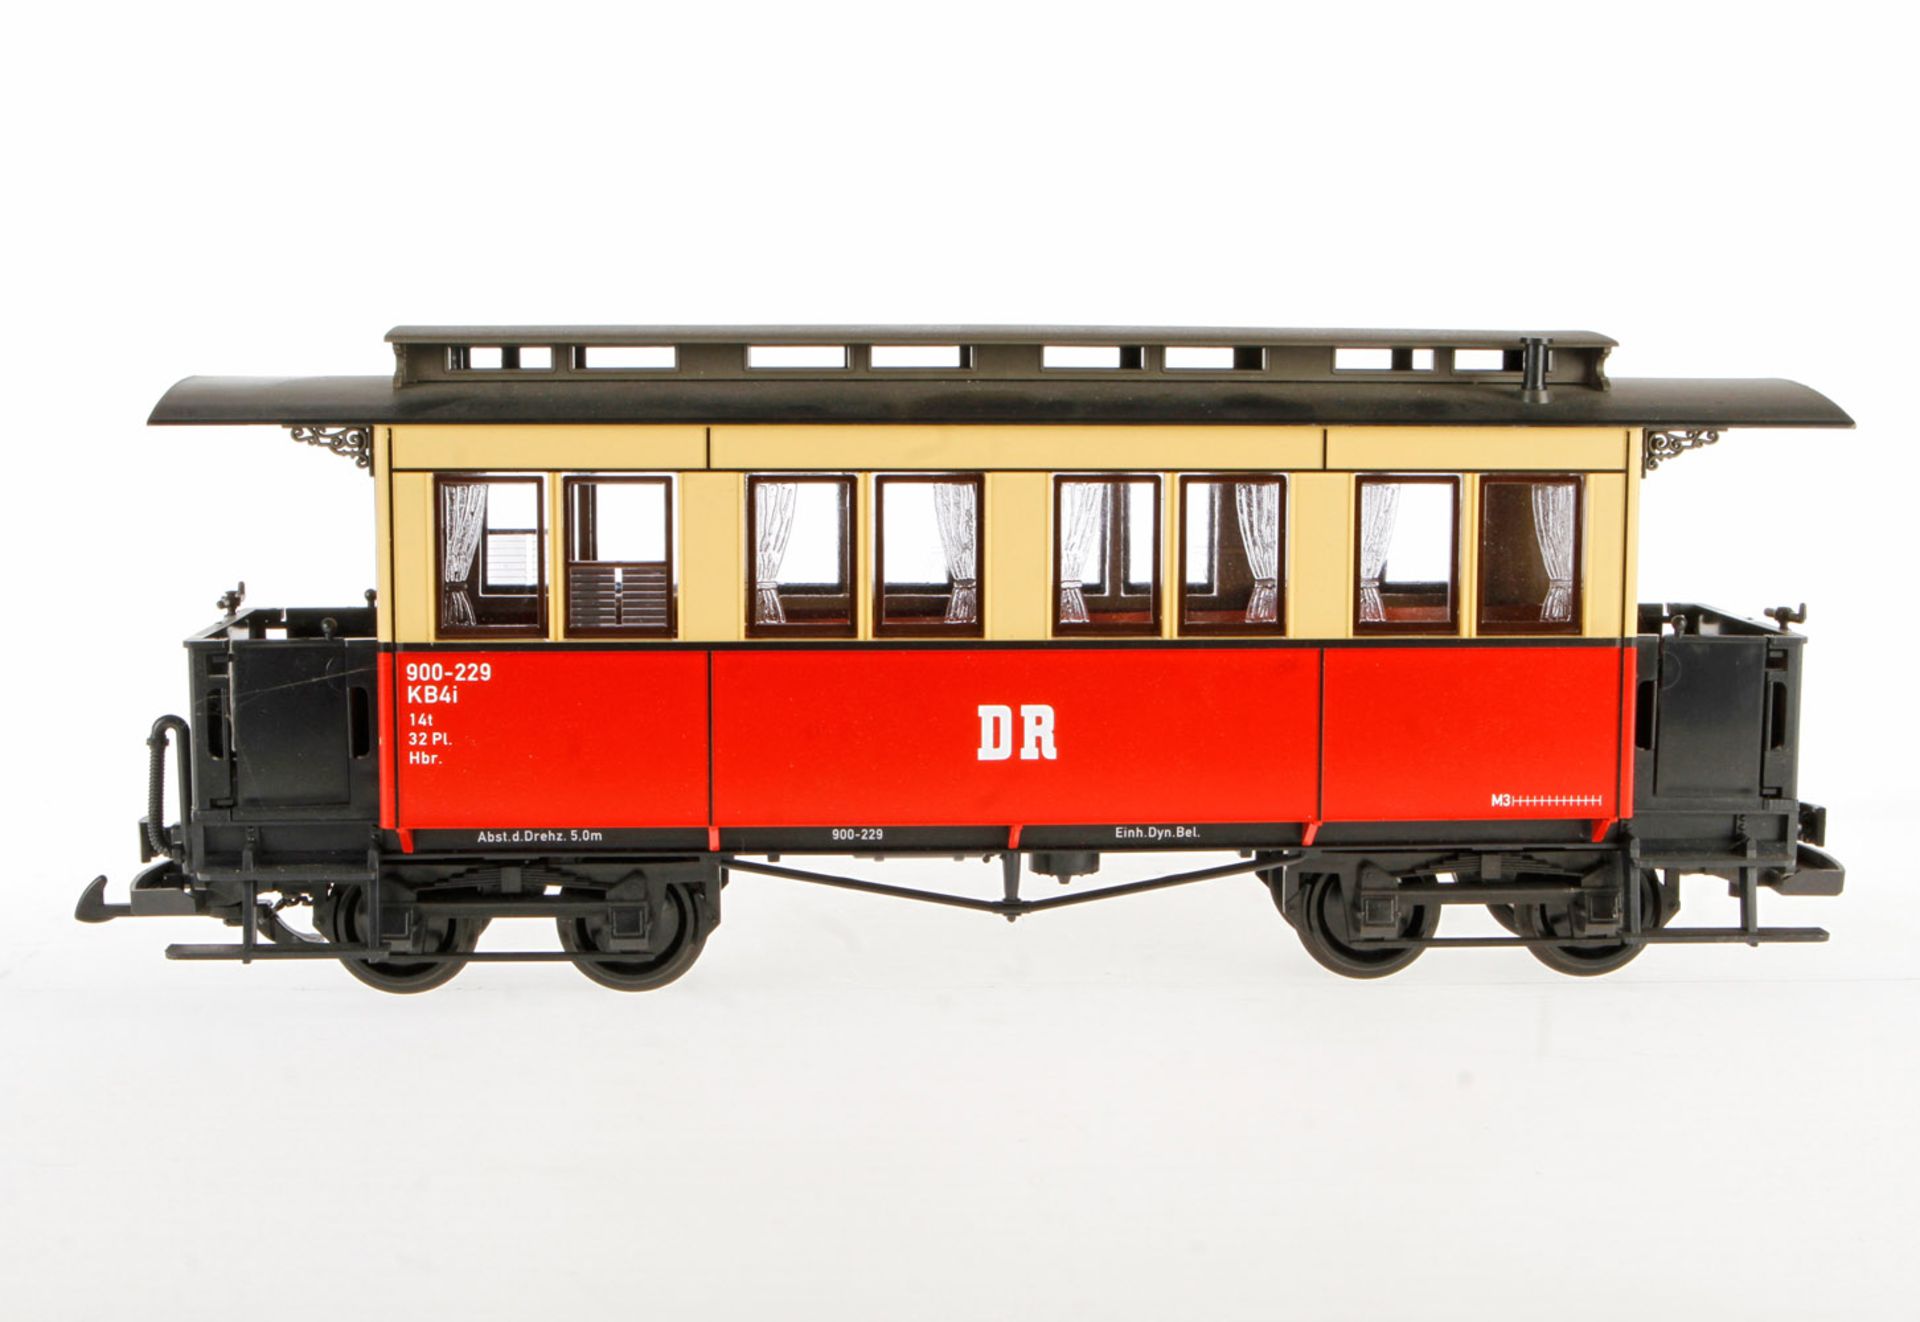 LGB Personenwagen "DR" 3061, creme/rot, Alterungs- und Gebrauchsspuren, Länge 41, sonst noch guter